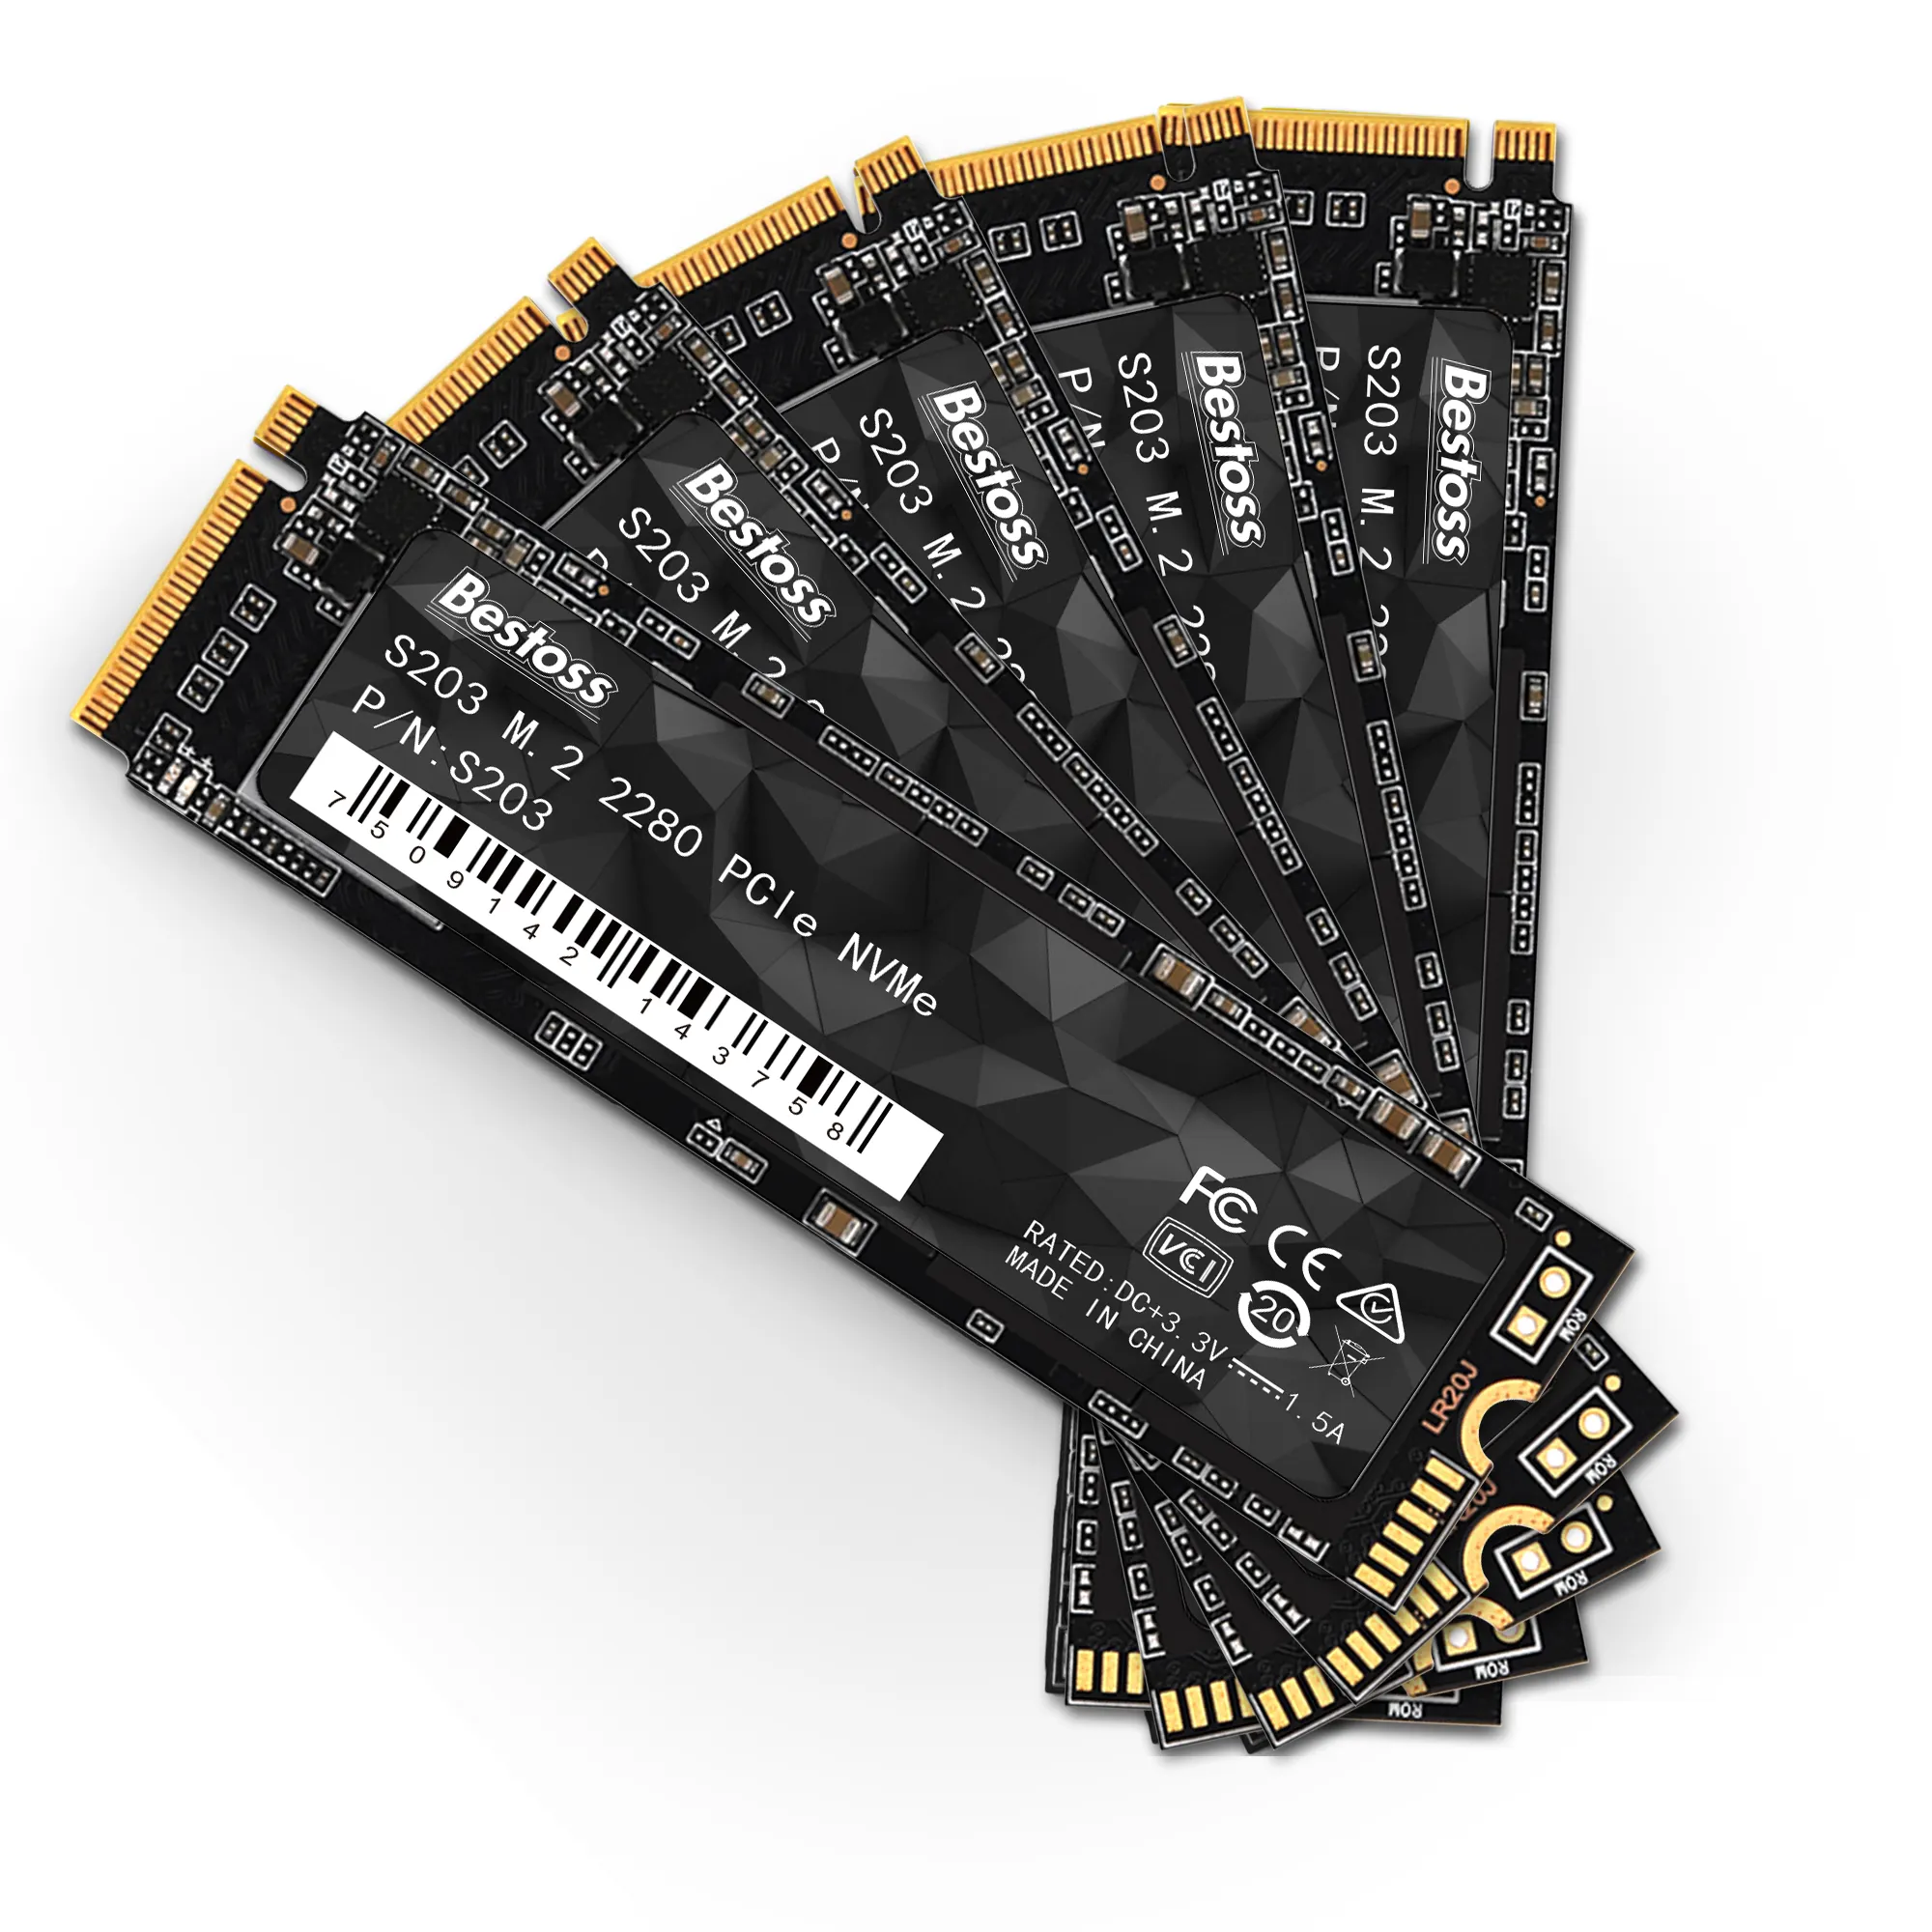 Bestoss Factory Price NVME PCIe 3.0 x 4 128GB 256GB 512GB 1TB 2TB Desktop Internal SSD Solid State Drive